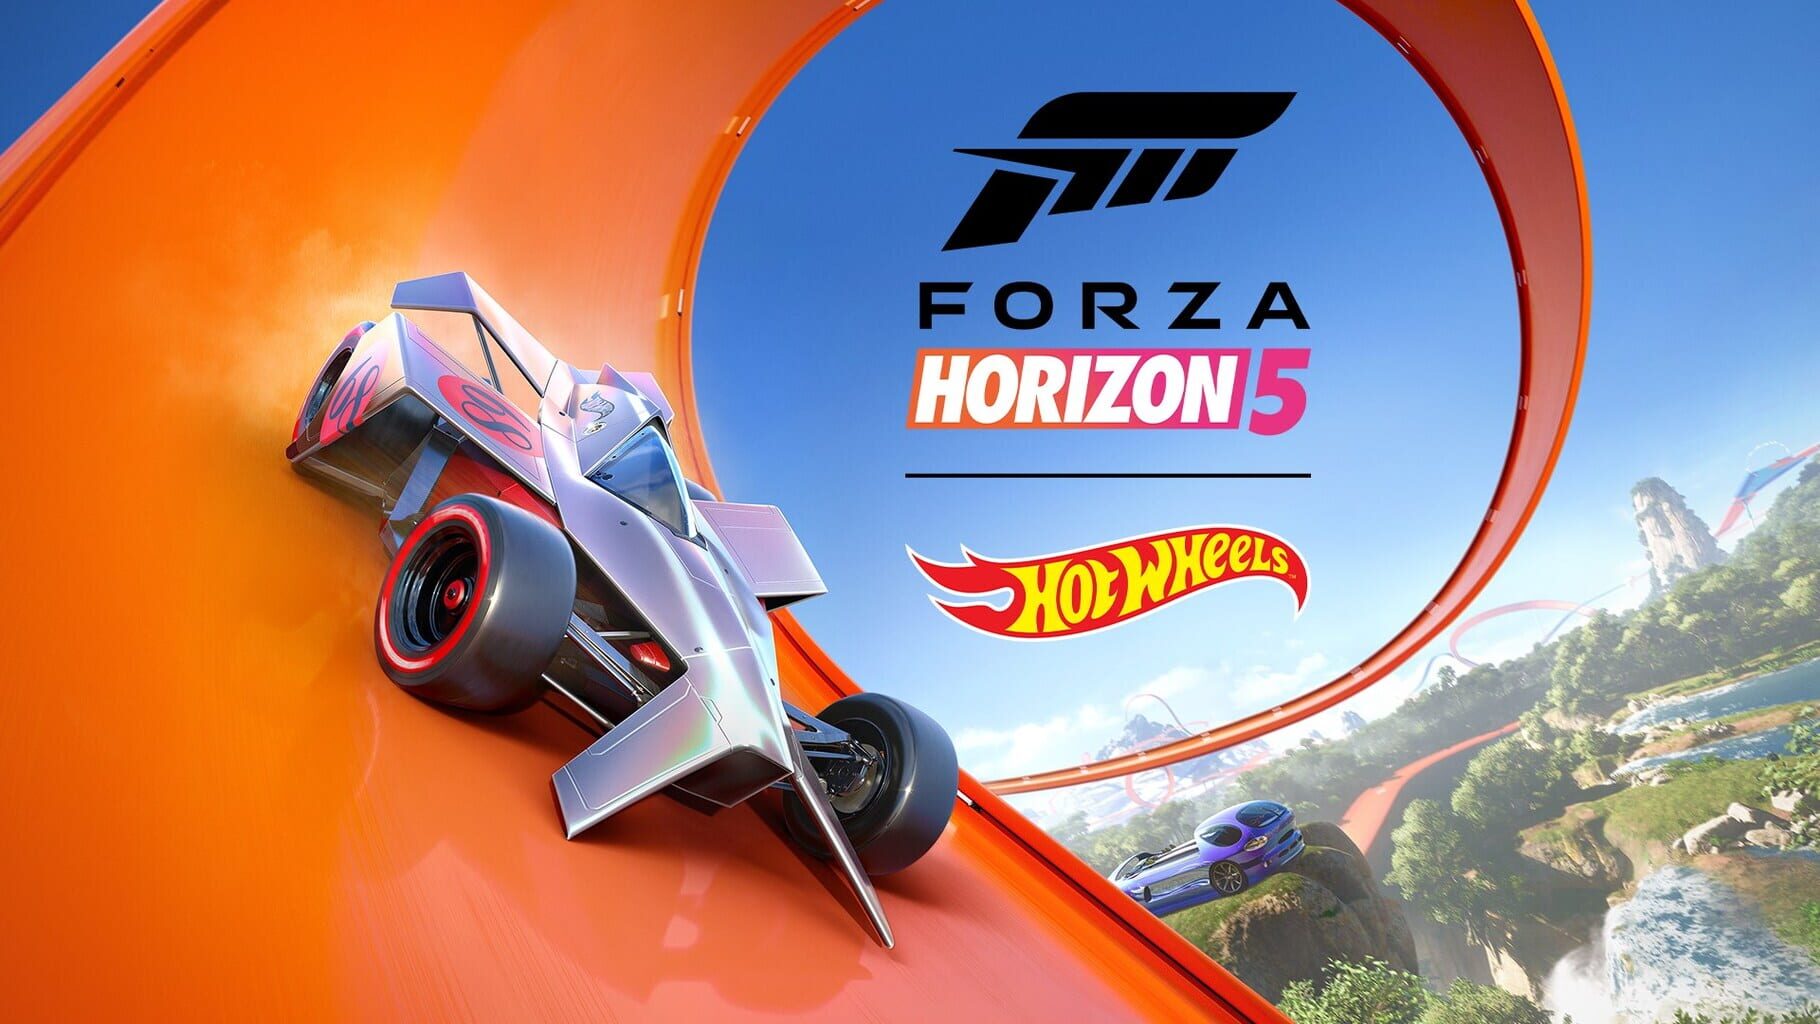 Arte - Forza Horizon 5: Hot Wheels